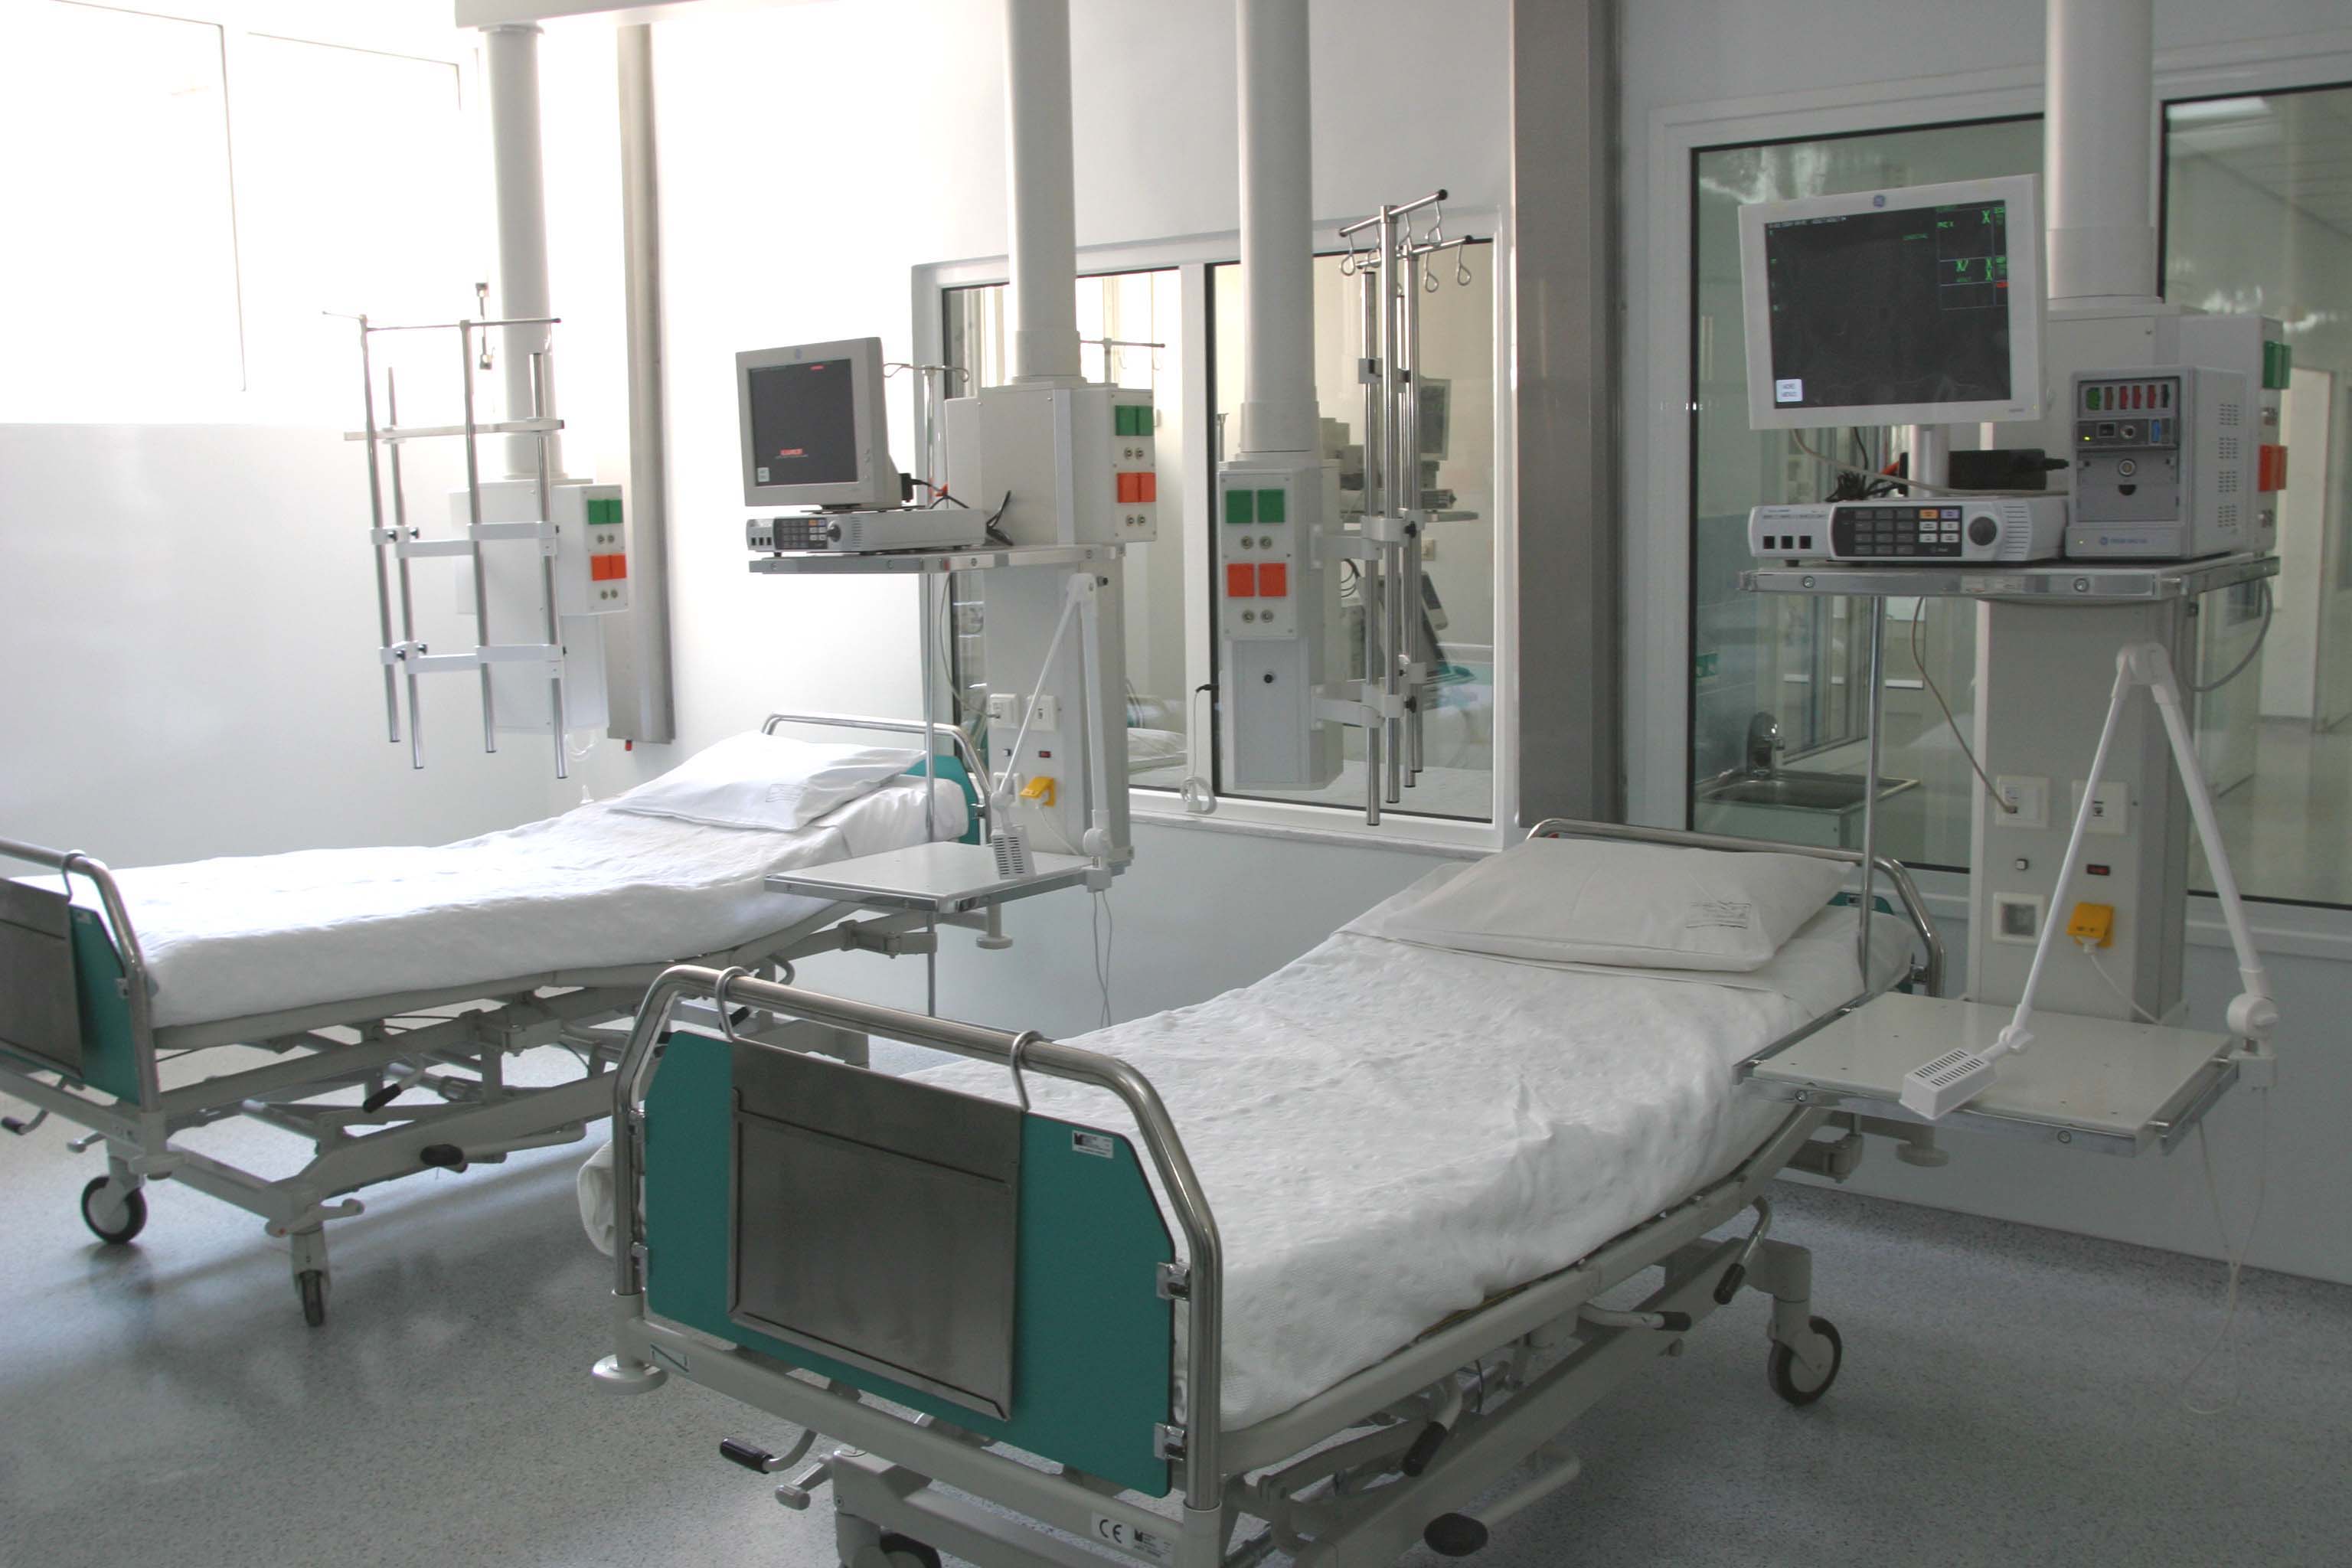 Με κλείσιμο κινδυνεύουν κρεβάτια ΜΕΘ λόγω αποχώρησης νοσηλευτών